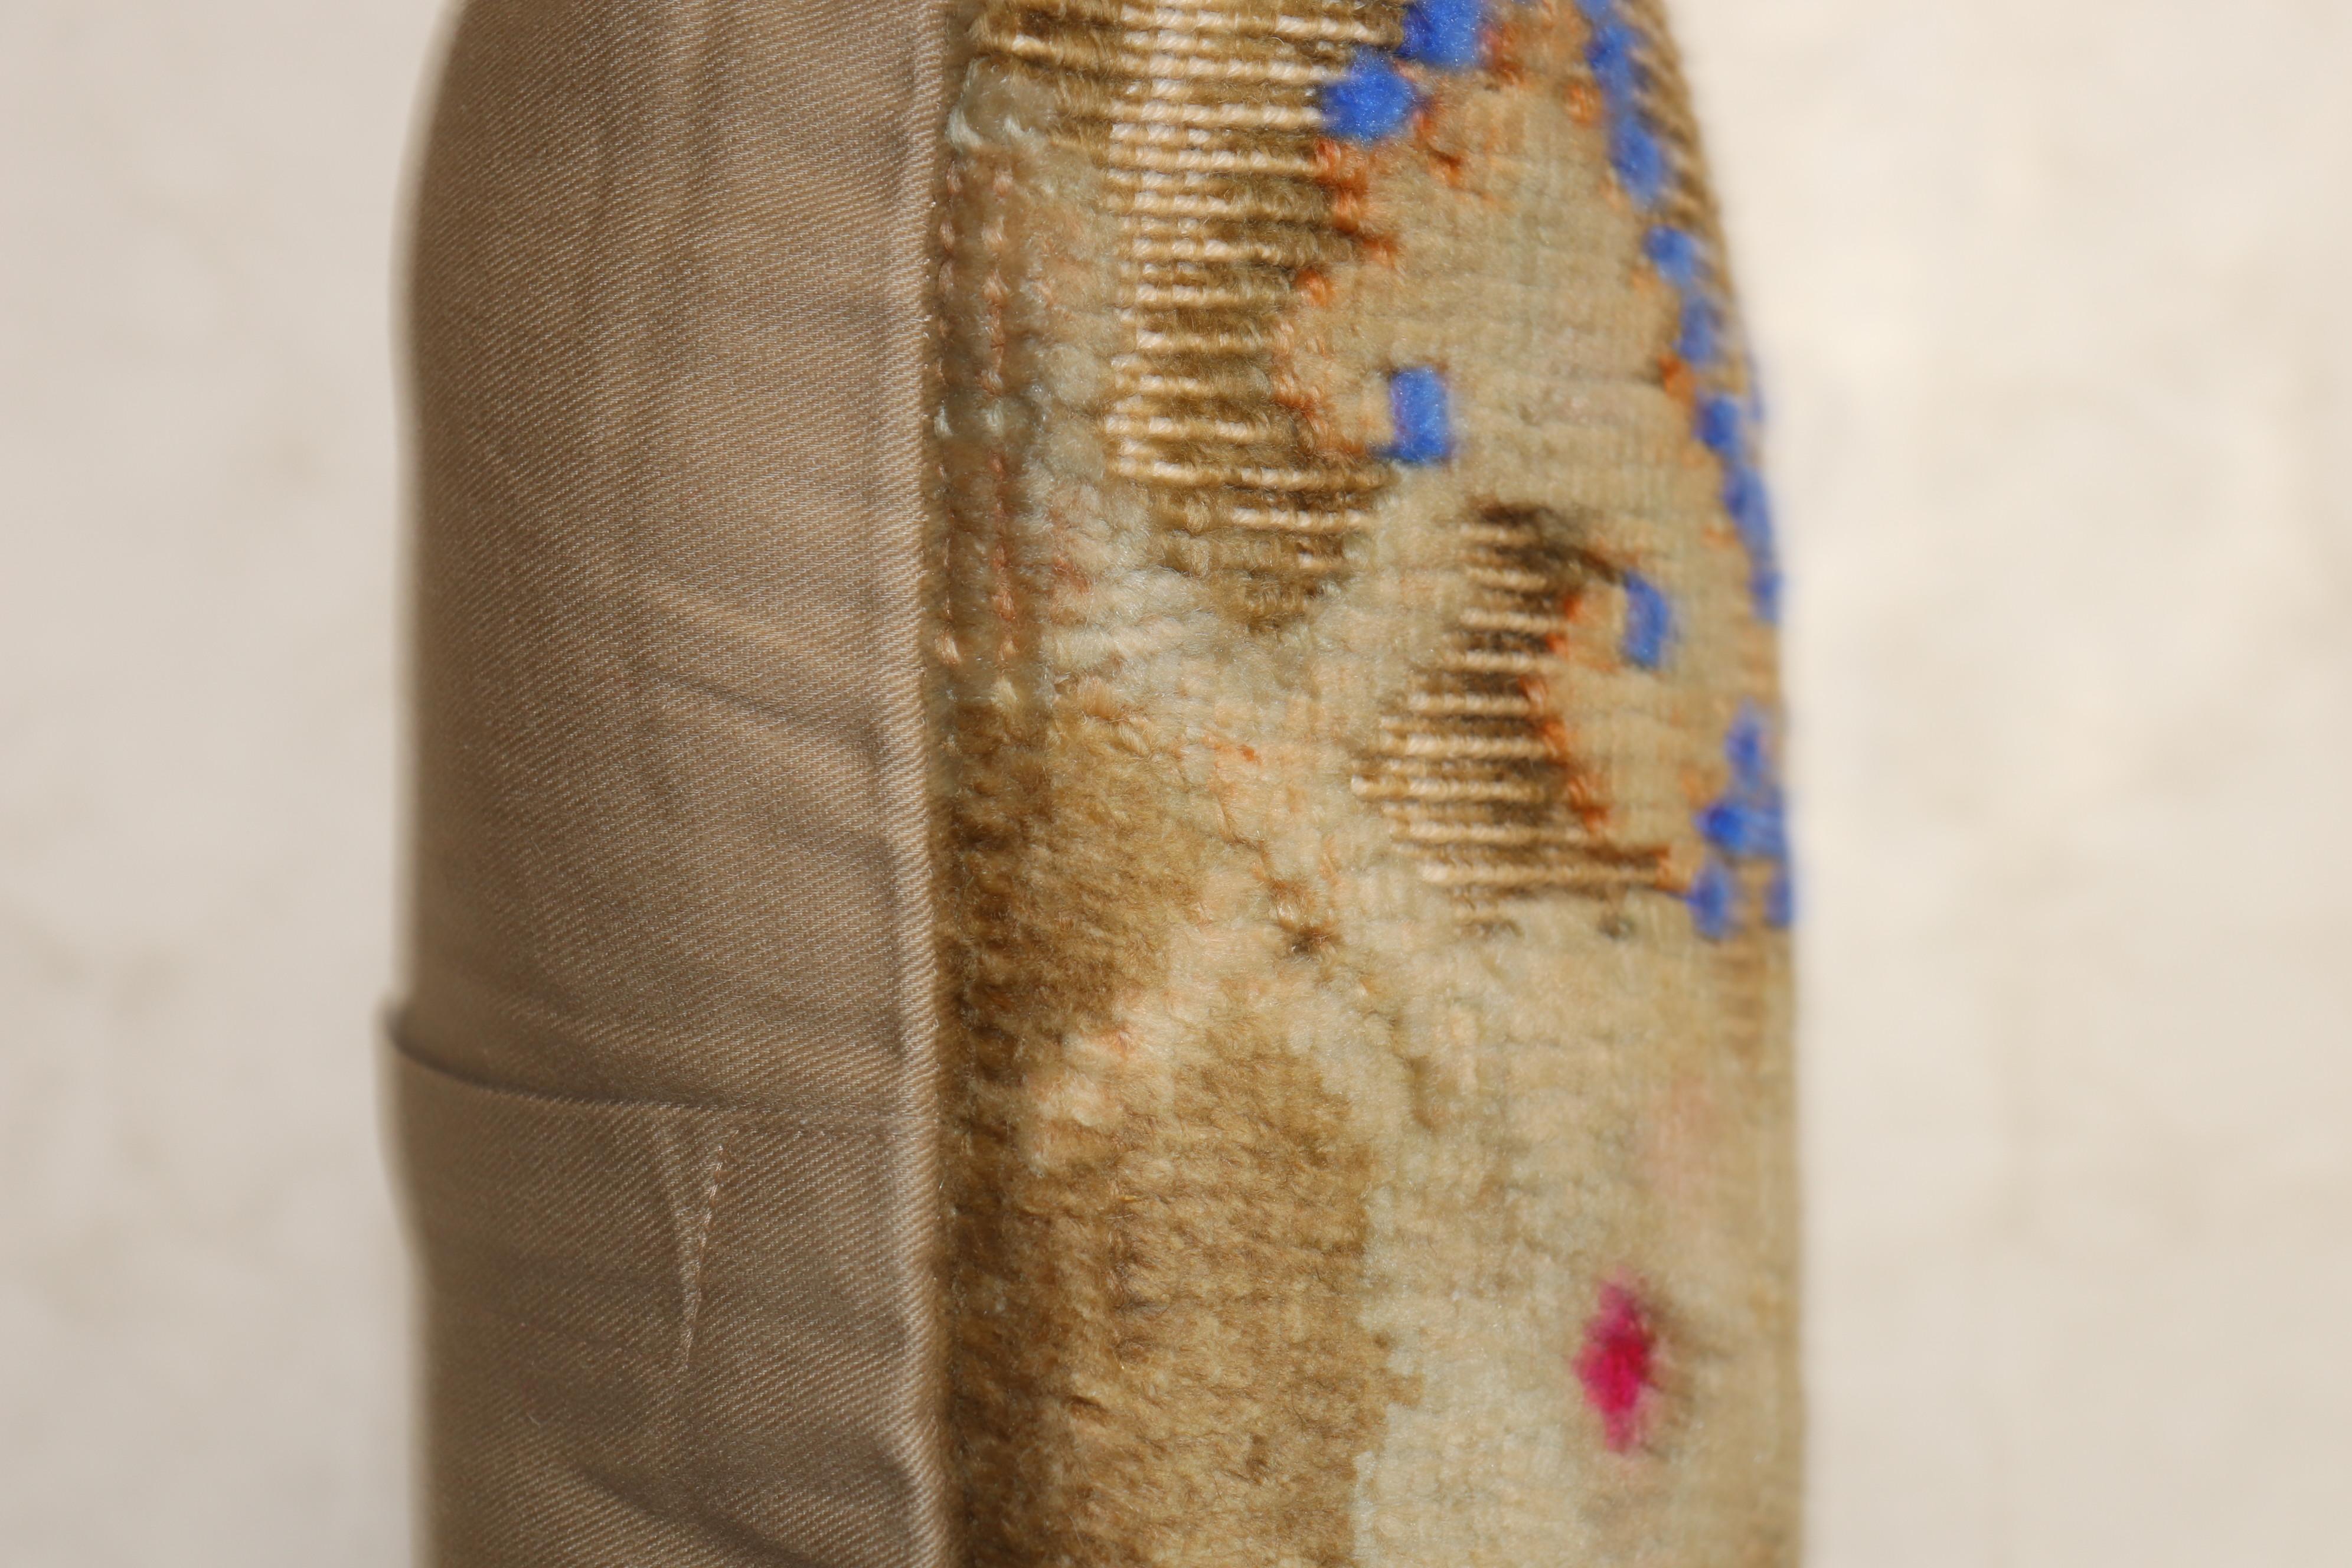 Kissen aus einem türkisch-anatolischen Teppich aus dem 20. Jahrhundert mit rosa und blauen Baumwoll-Akzenten auf einem shabby chic beige-braunen Motiv

Größe: 18'' x 18''.